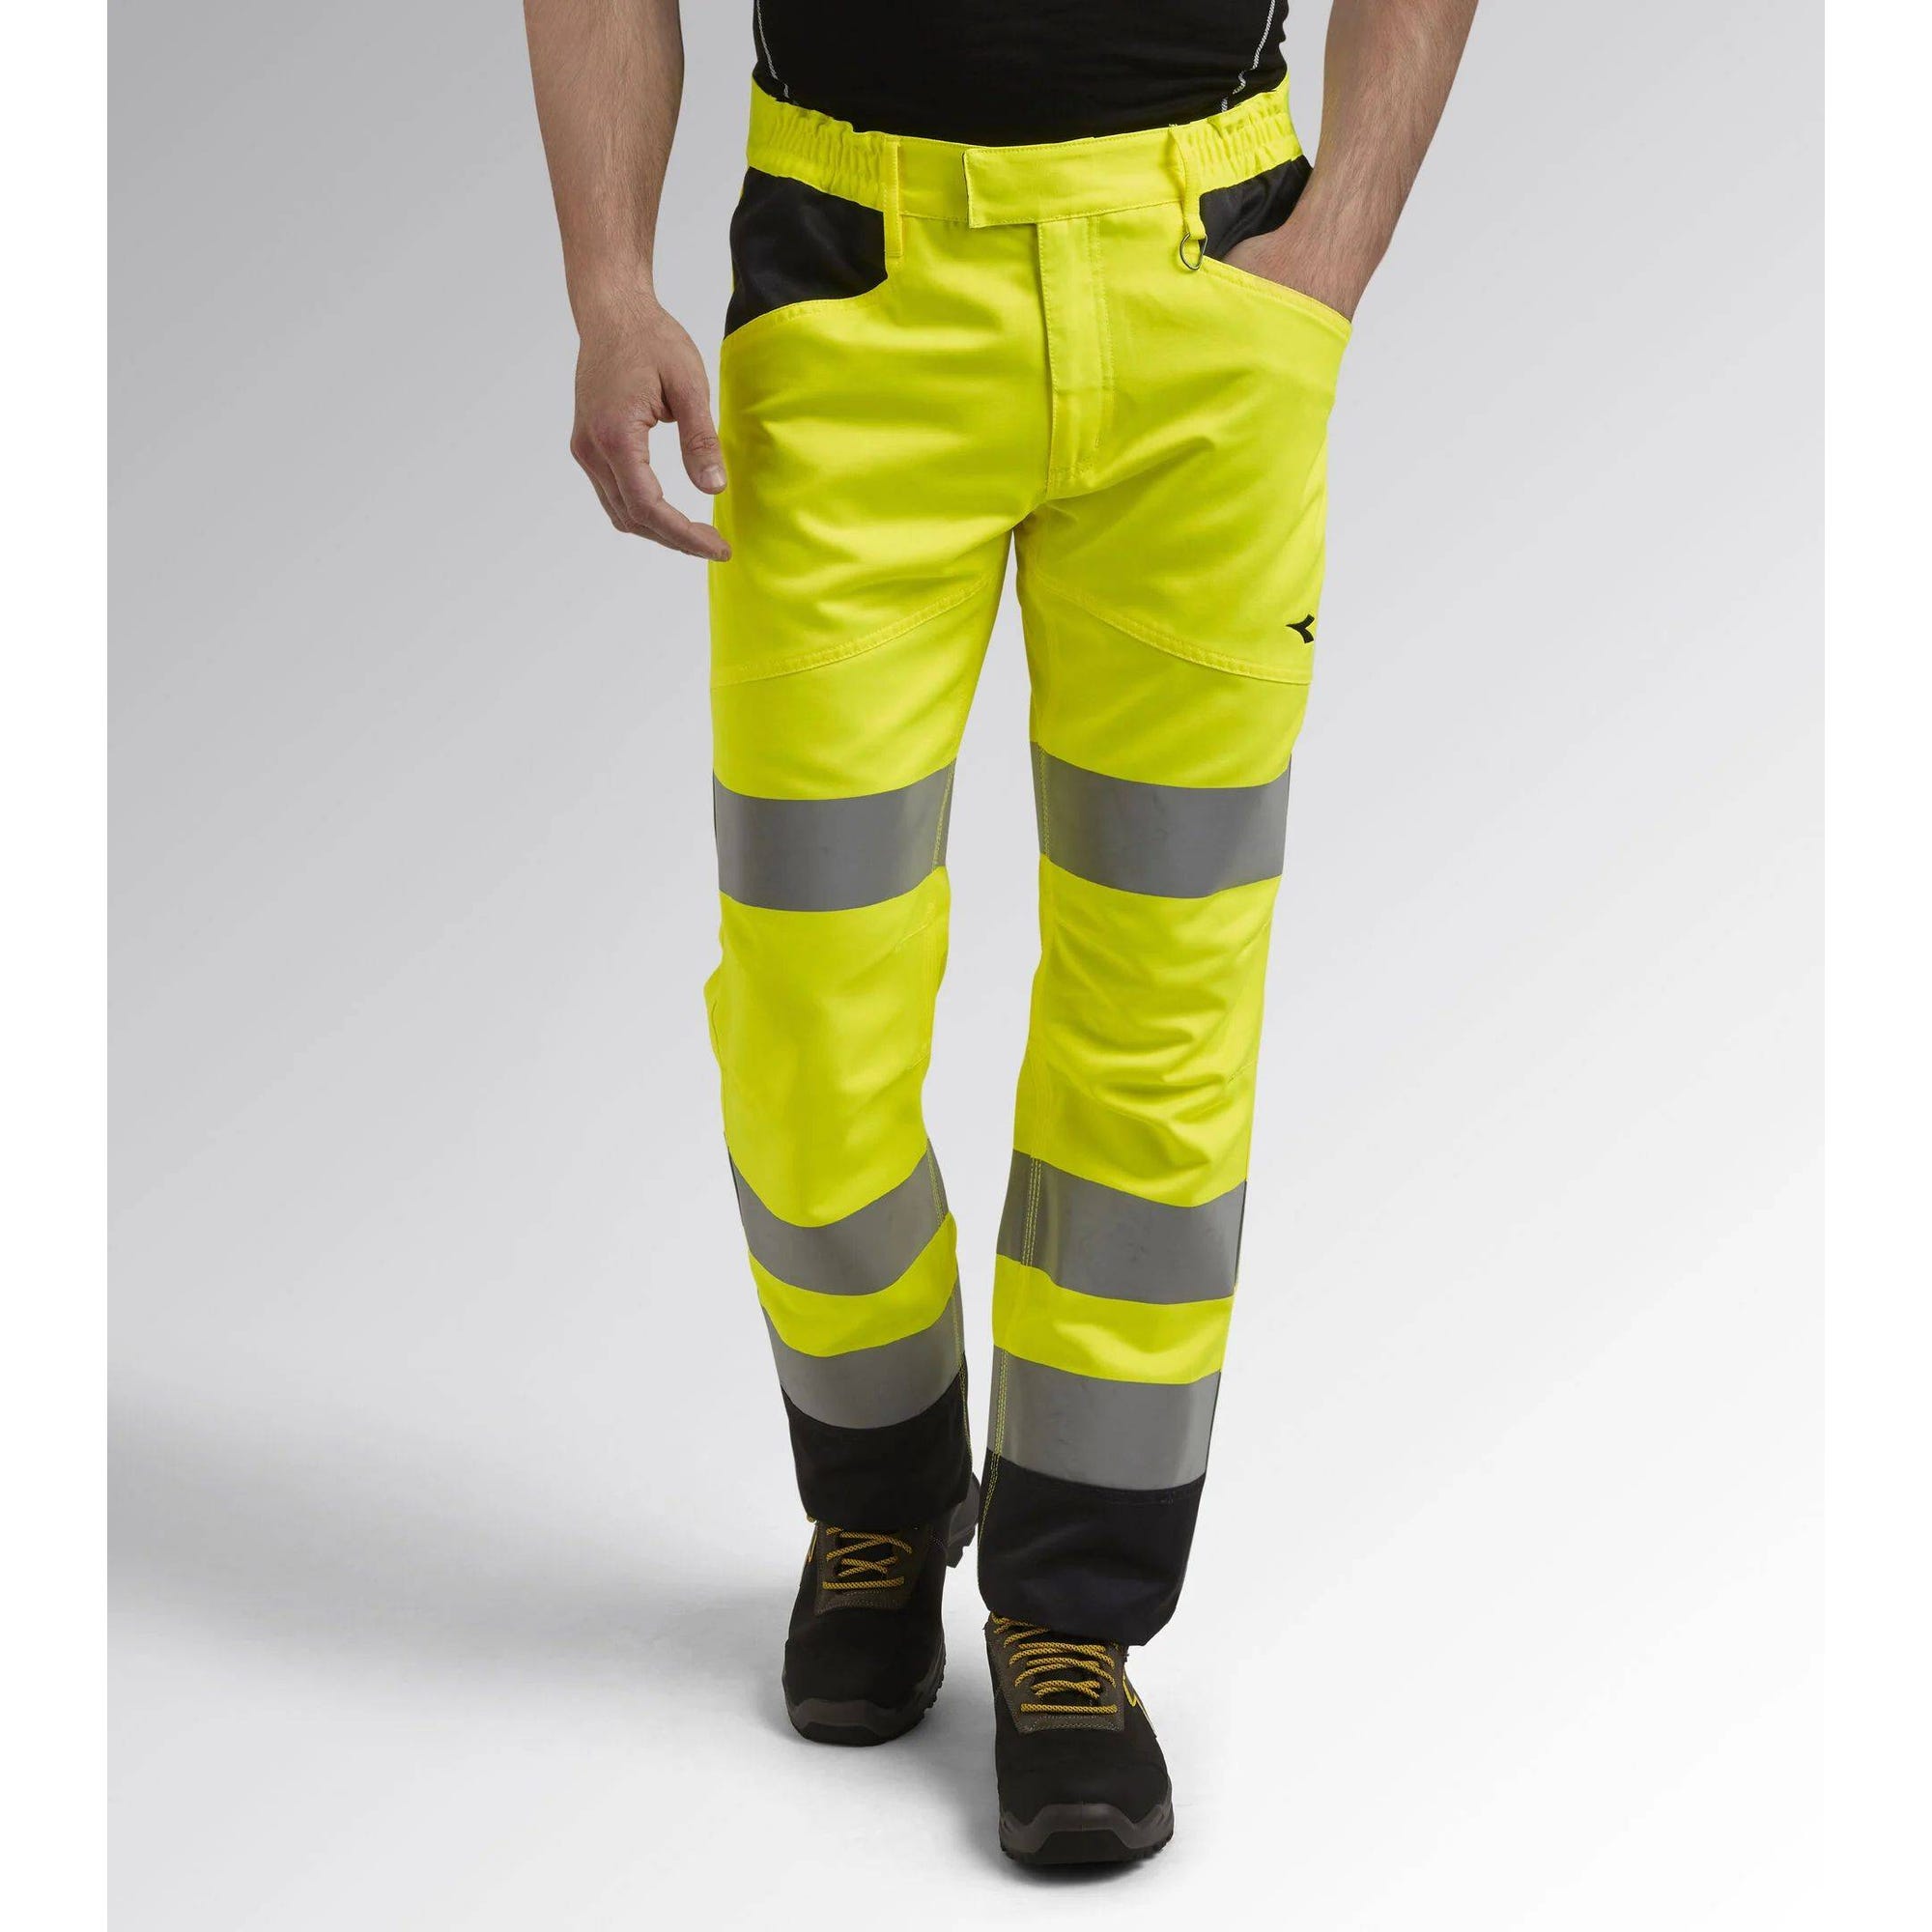 Pantalon de travail haute visibilité Diadora EN 20471:2013 2 Orange Fluo S 8